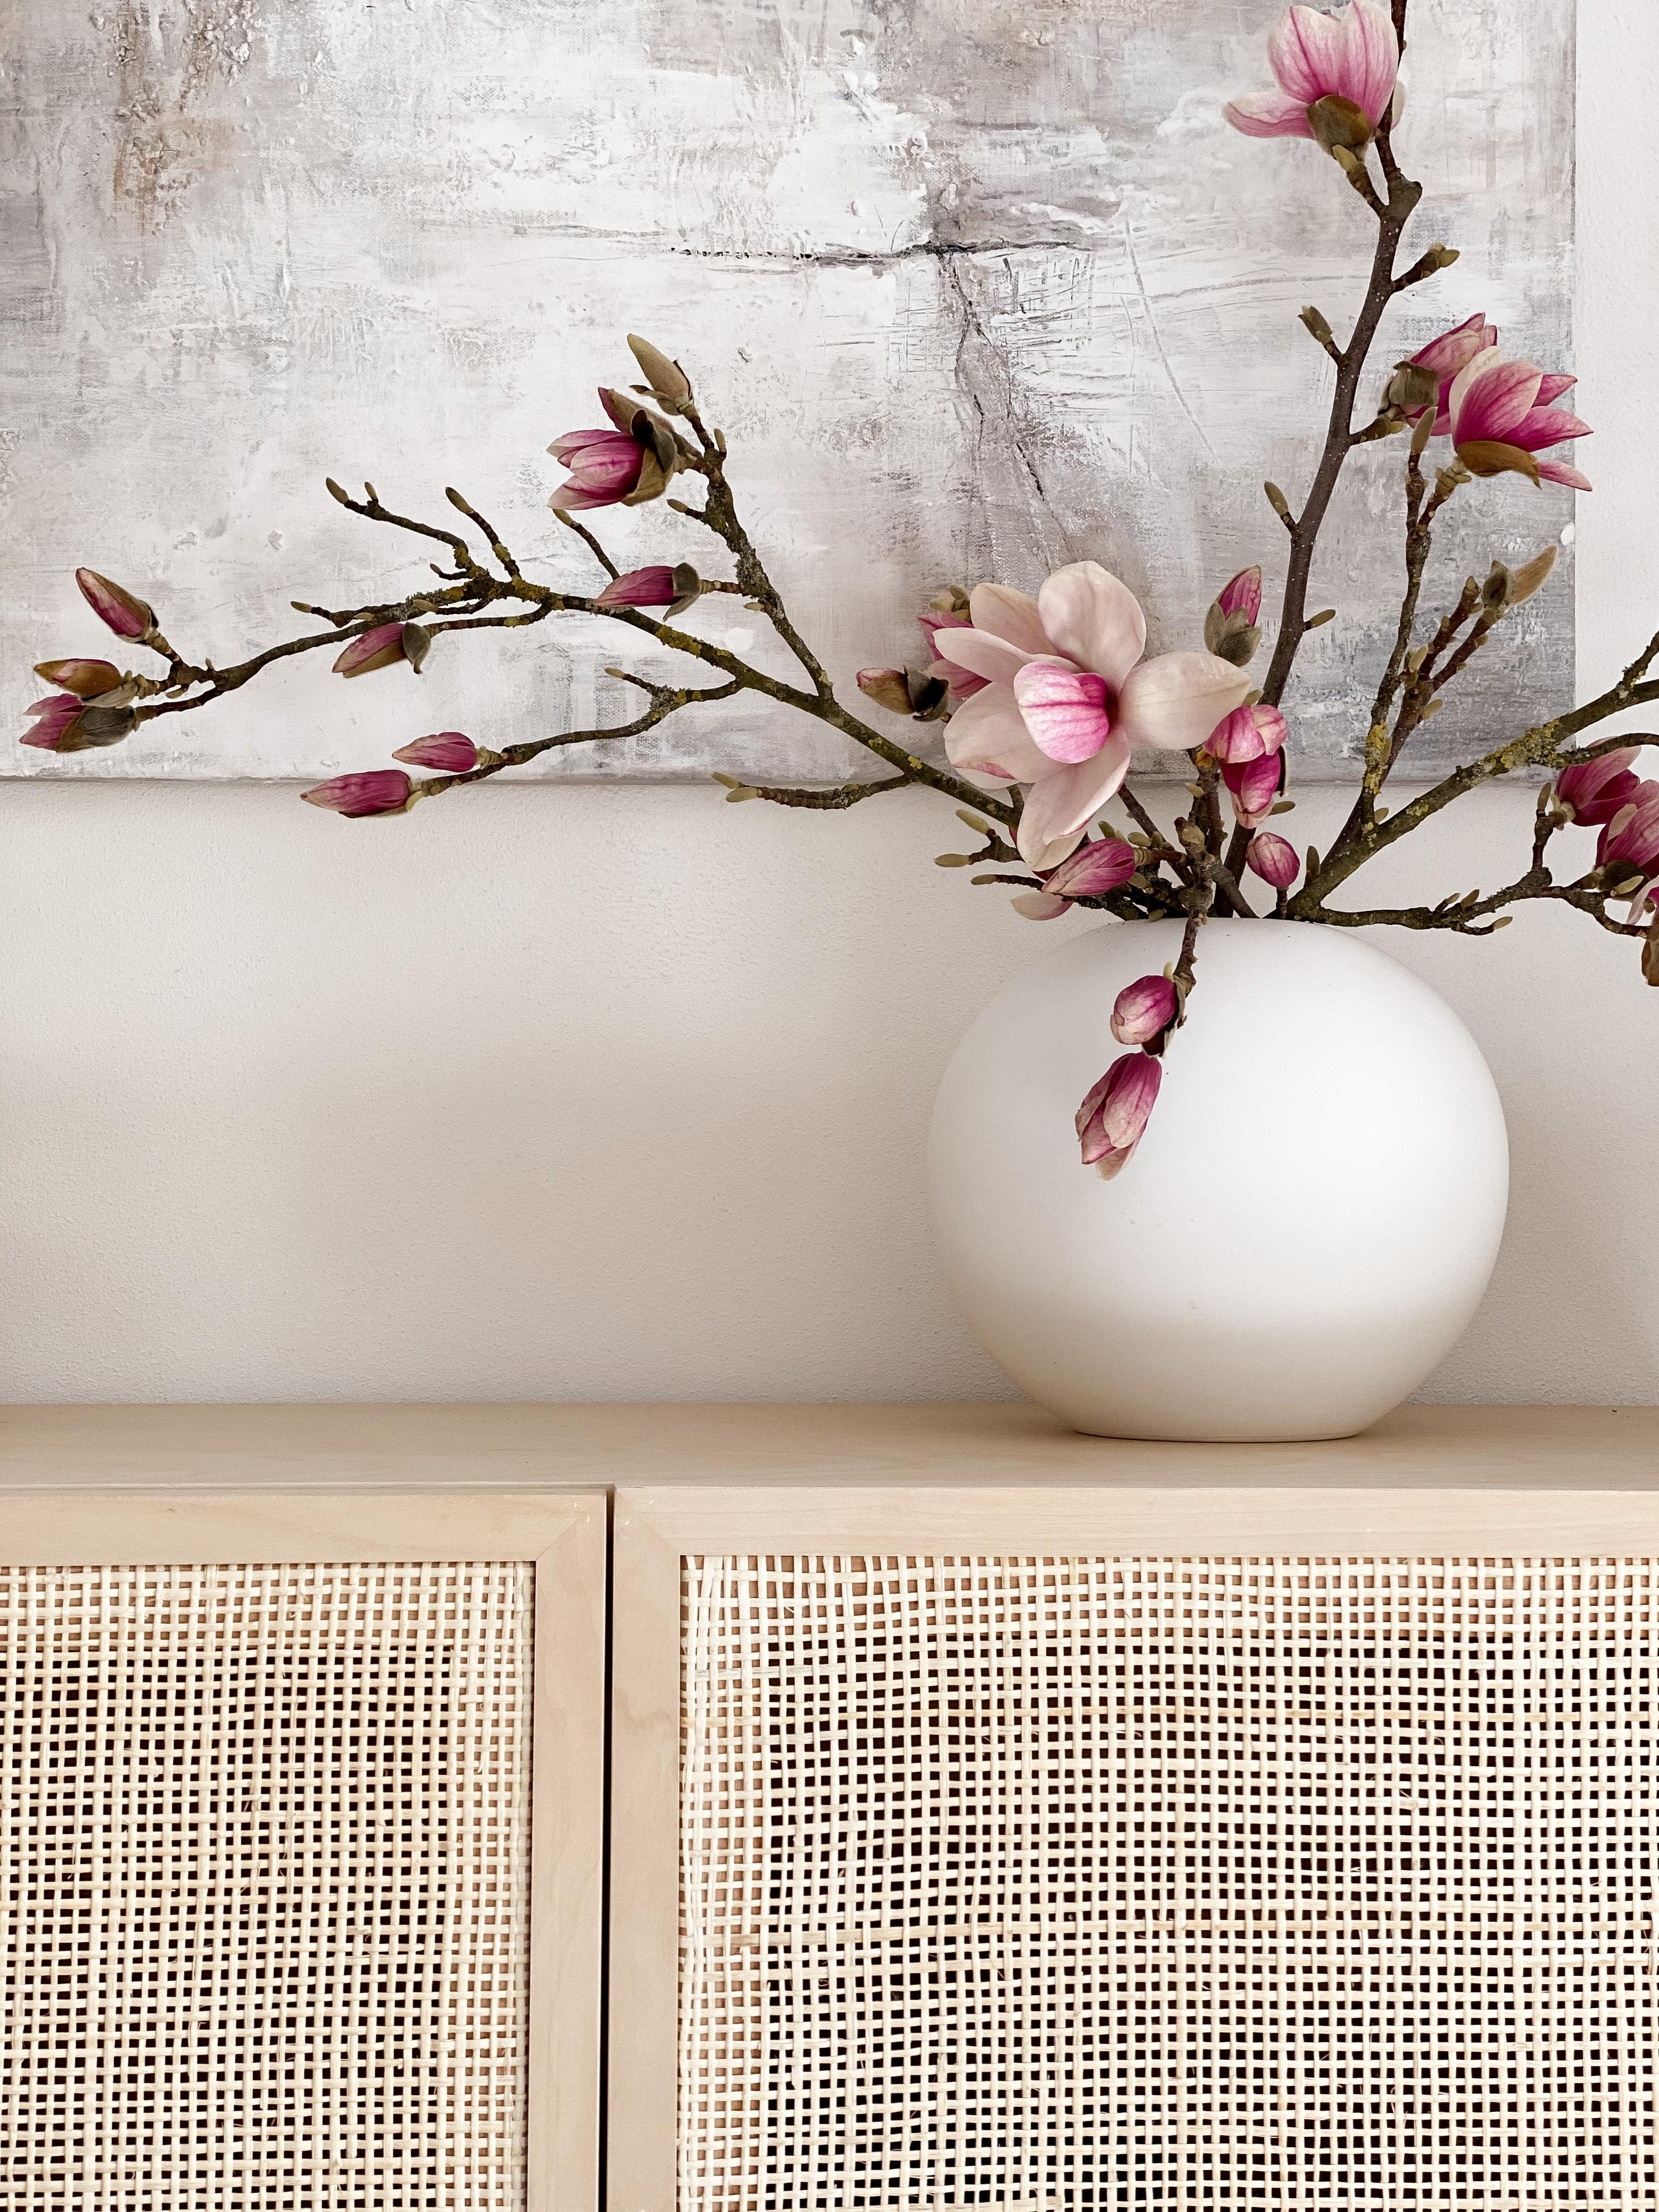 #magnolienliebe #blumenliebe #freshflowers #frühling